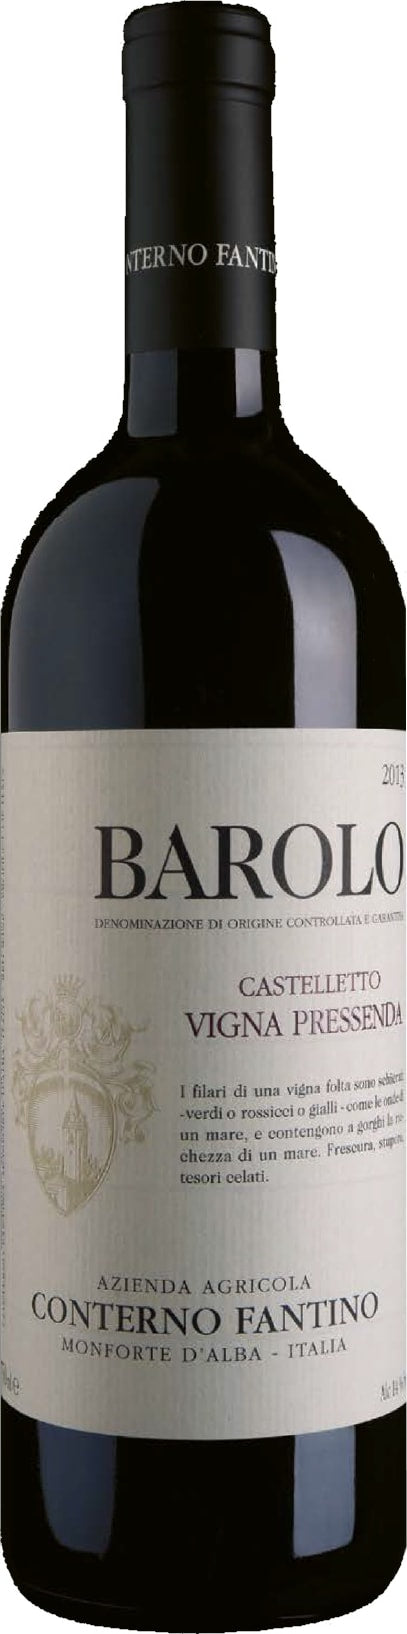 Conterno Fantino Barolo Castelletto Vigna Pressenda 2017 6x75cl - Just Wines 